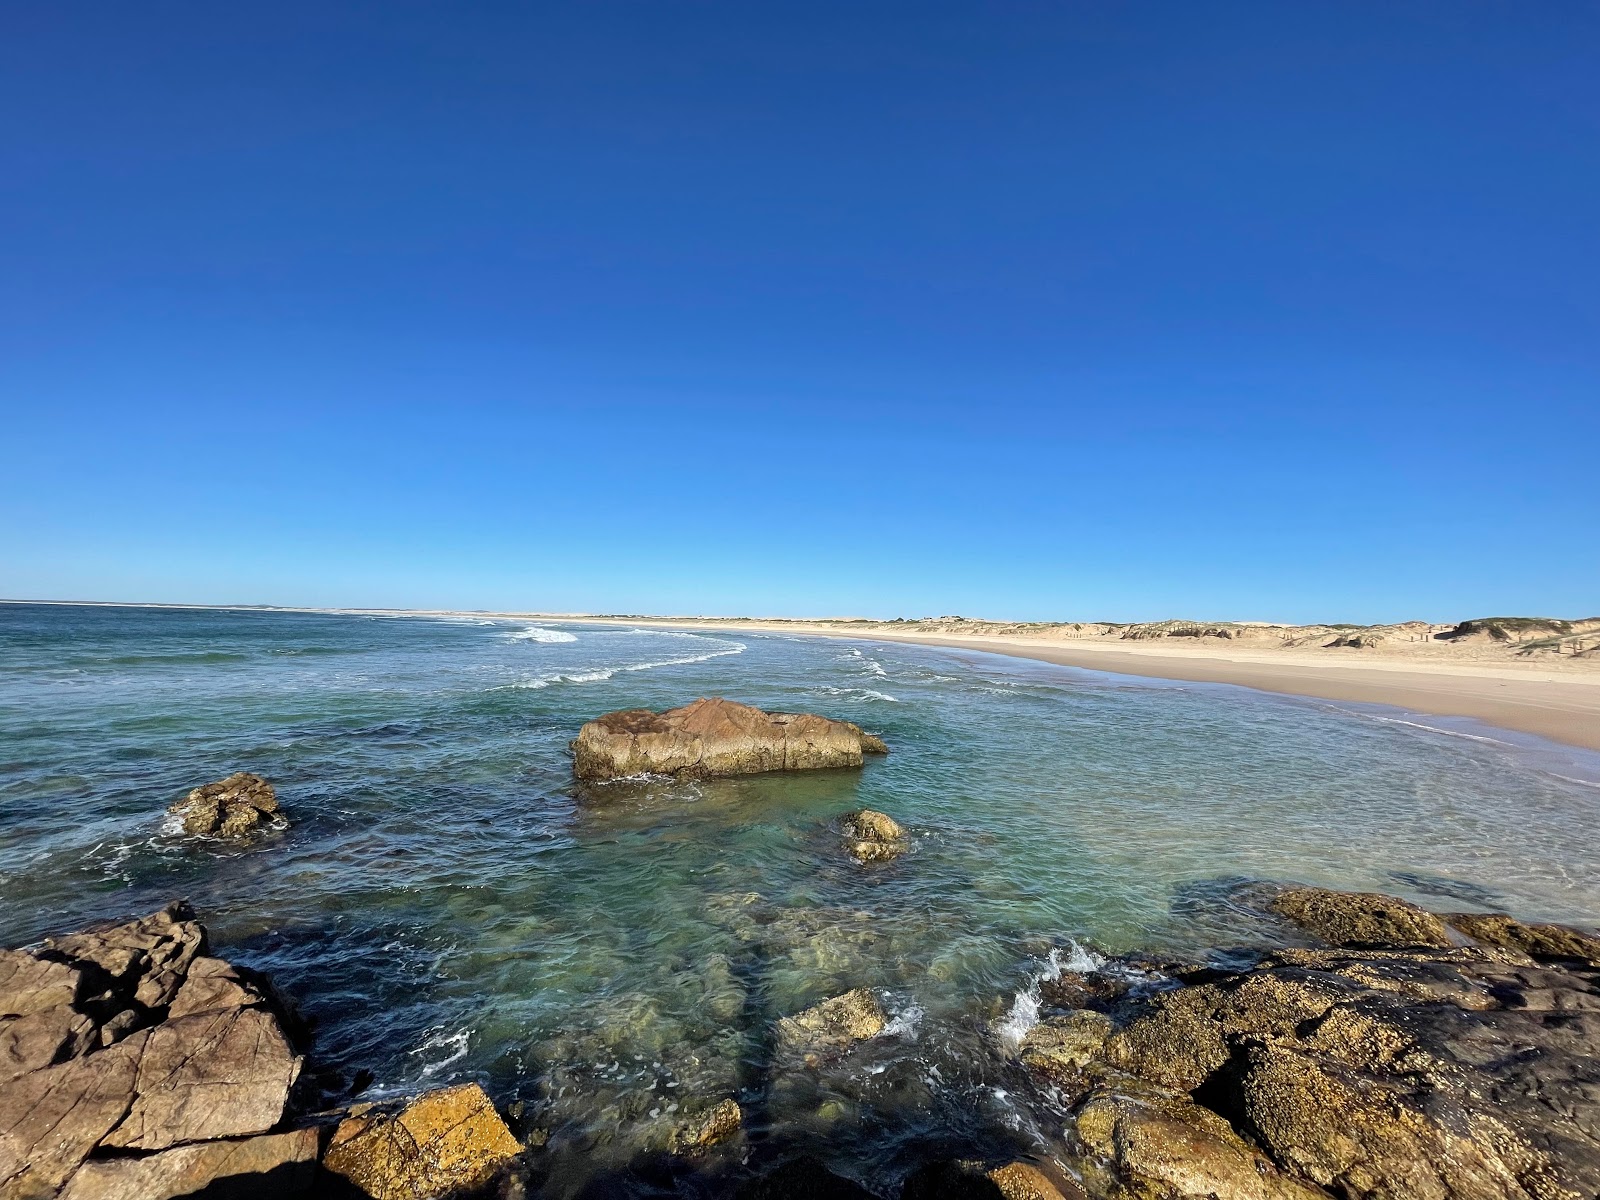 Foto de Wanderrabah Beach com areia brilhante superfície